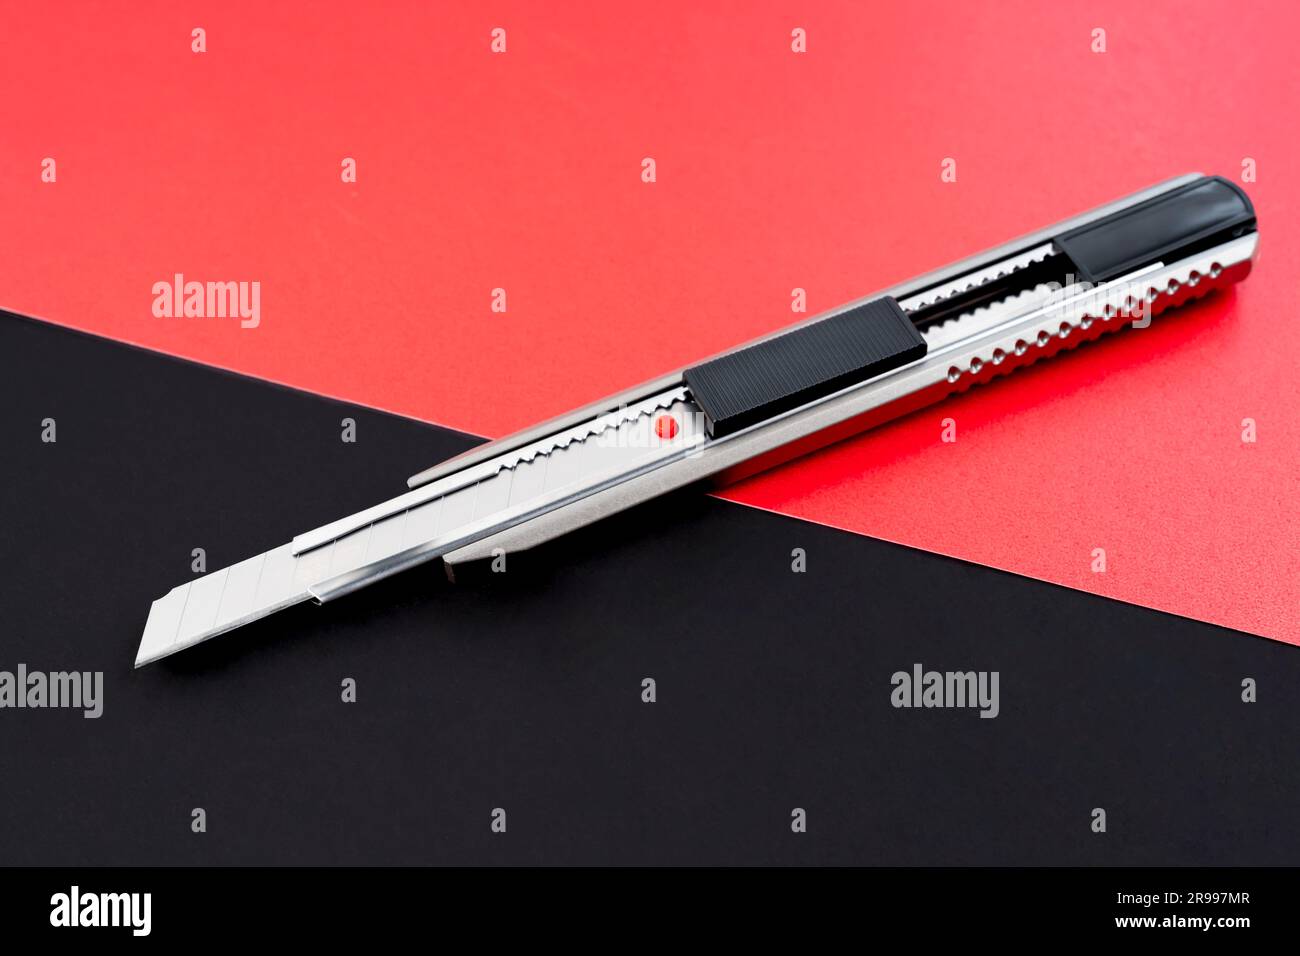 Ein Cutter- oder Schreibmesser auf schwarzem und rotem Hintergrund. Stockfoto